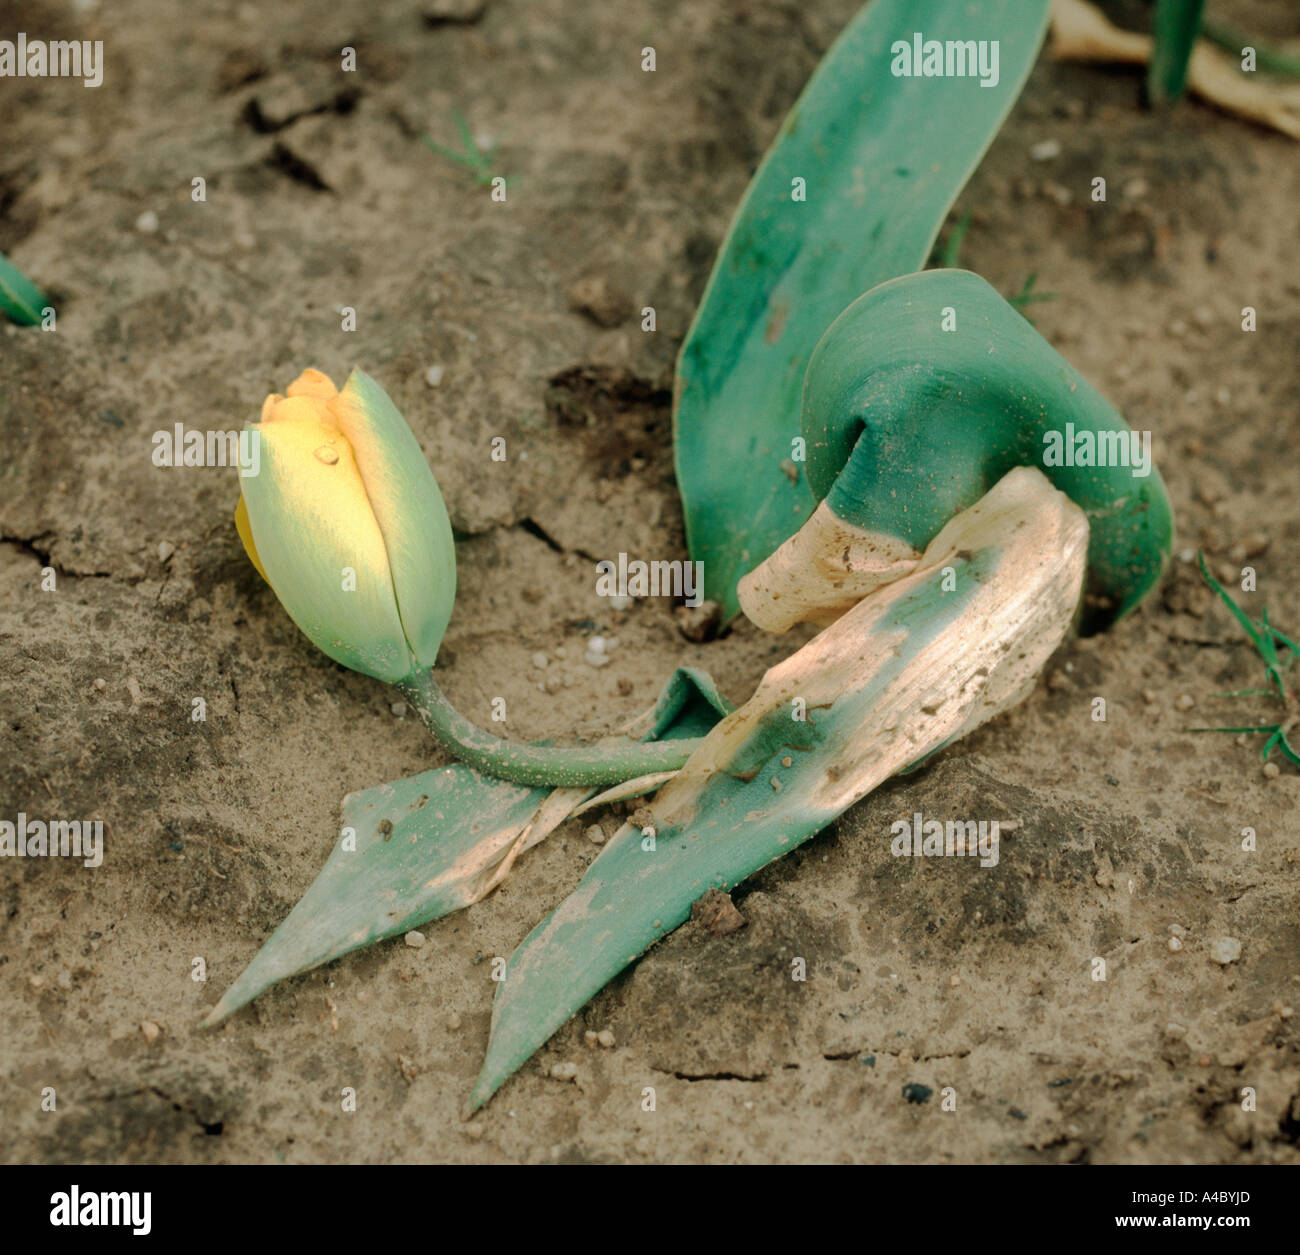 Basal rot Fusarium oxysporum causing severe wilt in a tulip plant Stock Photo